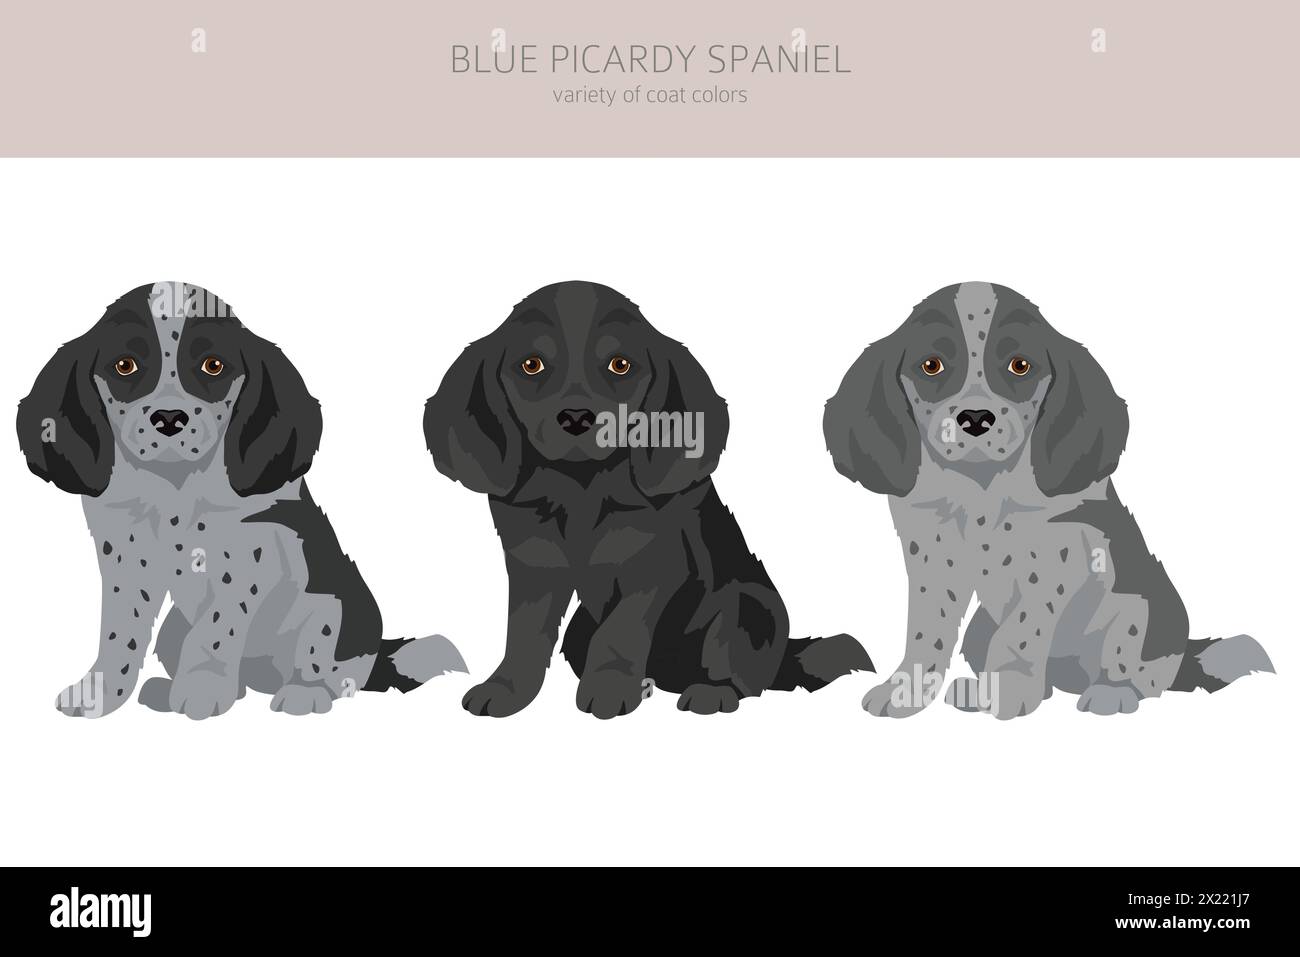 Cucciolo Blue Picardy Spaniel Clipart. Diversi colori di rivestimento e pose. Illustrazione vettoriale Illustrazione Vettoriale